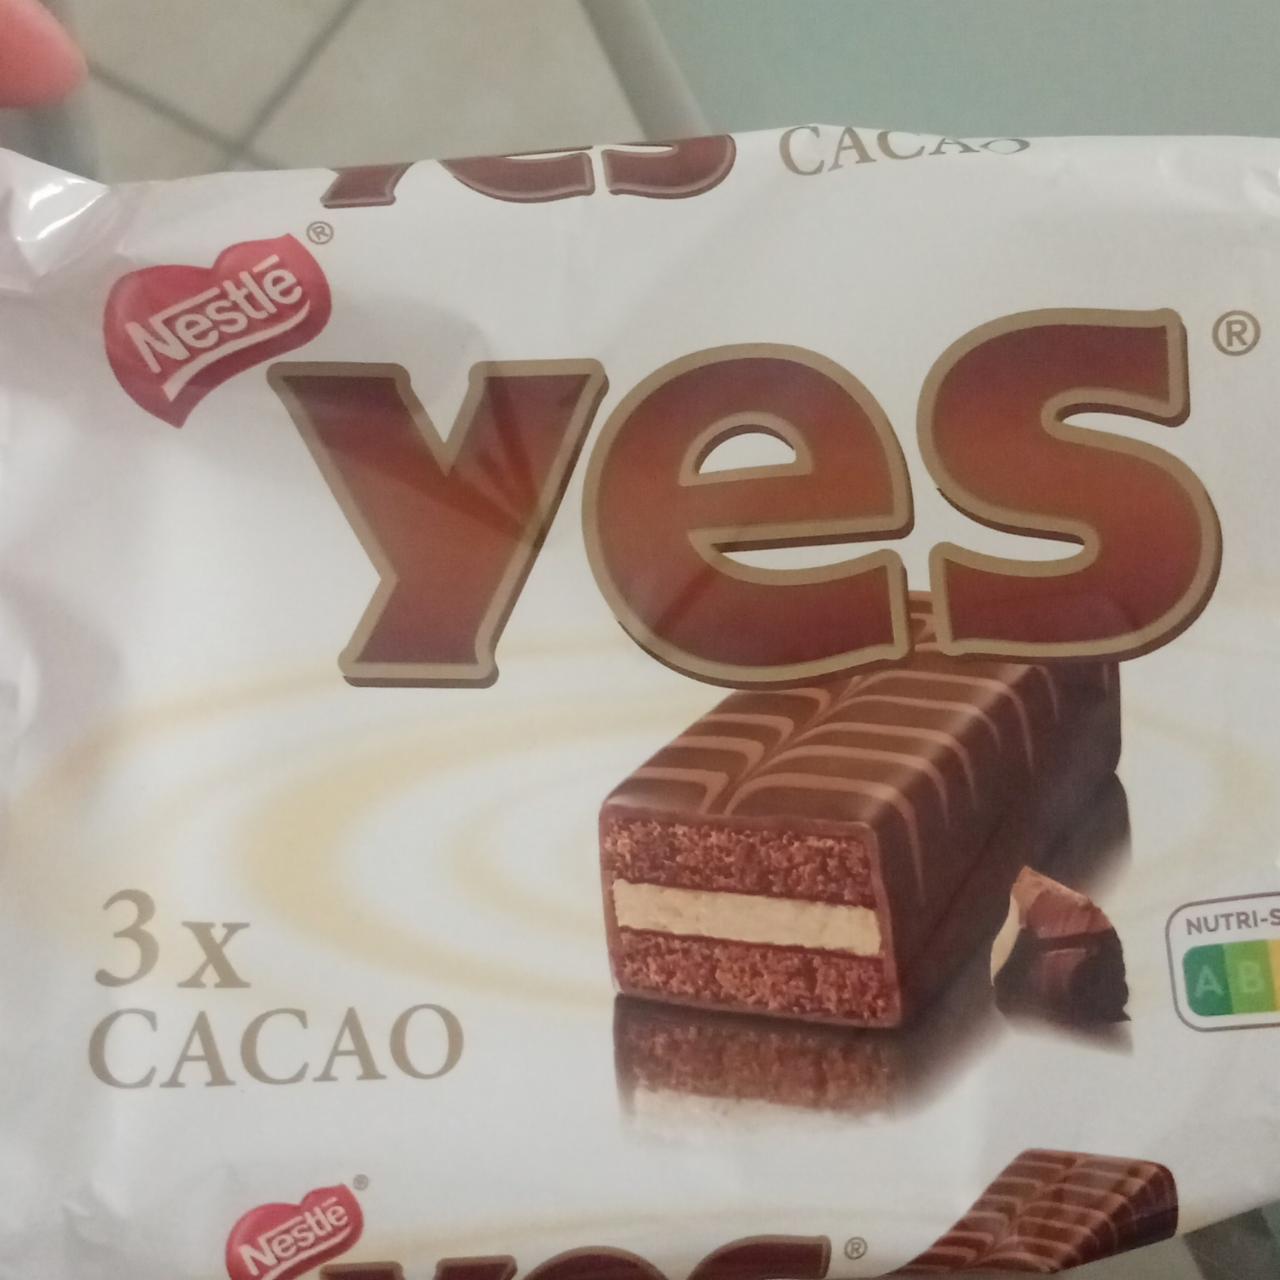 Fotografie - Yes cacao Nestlé